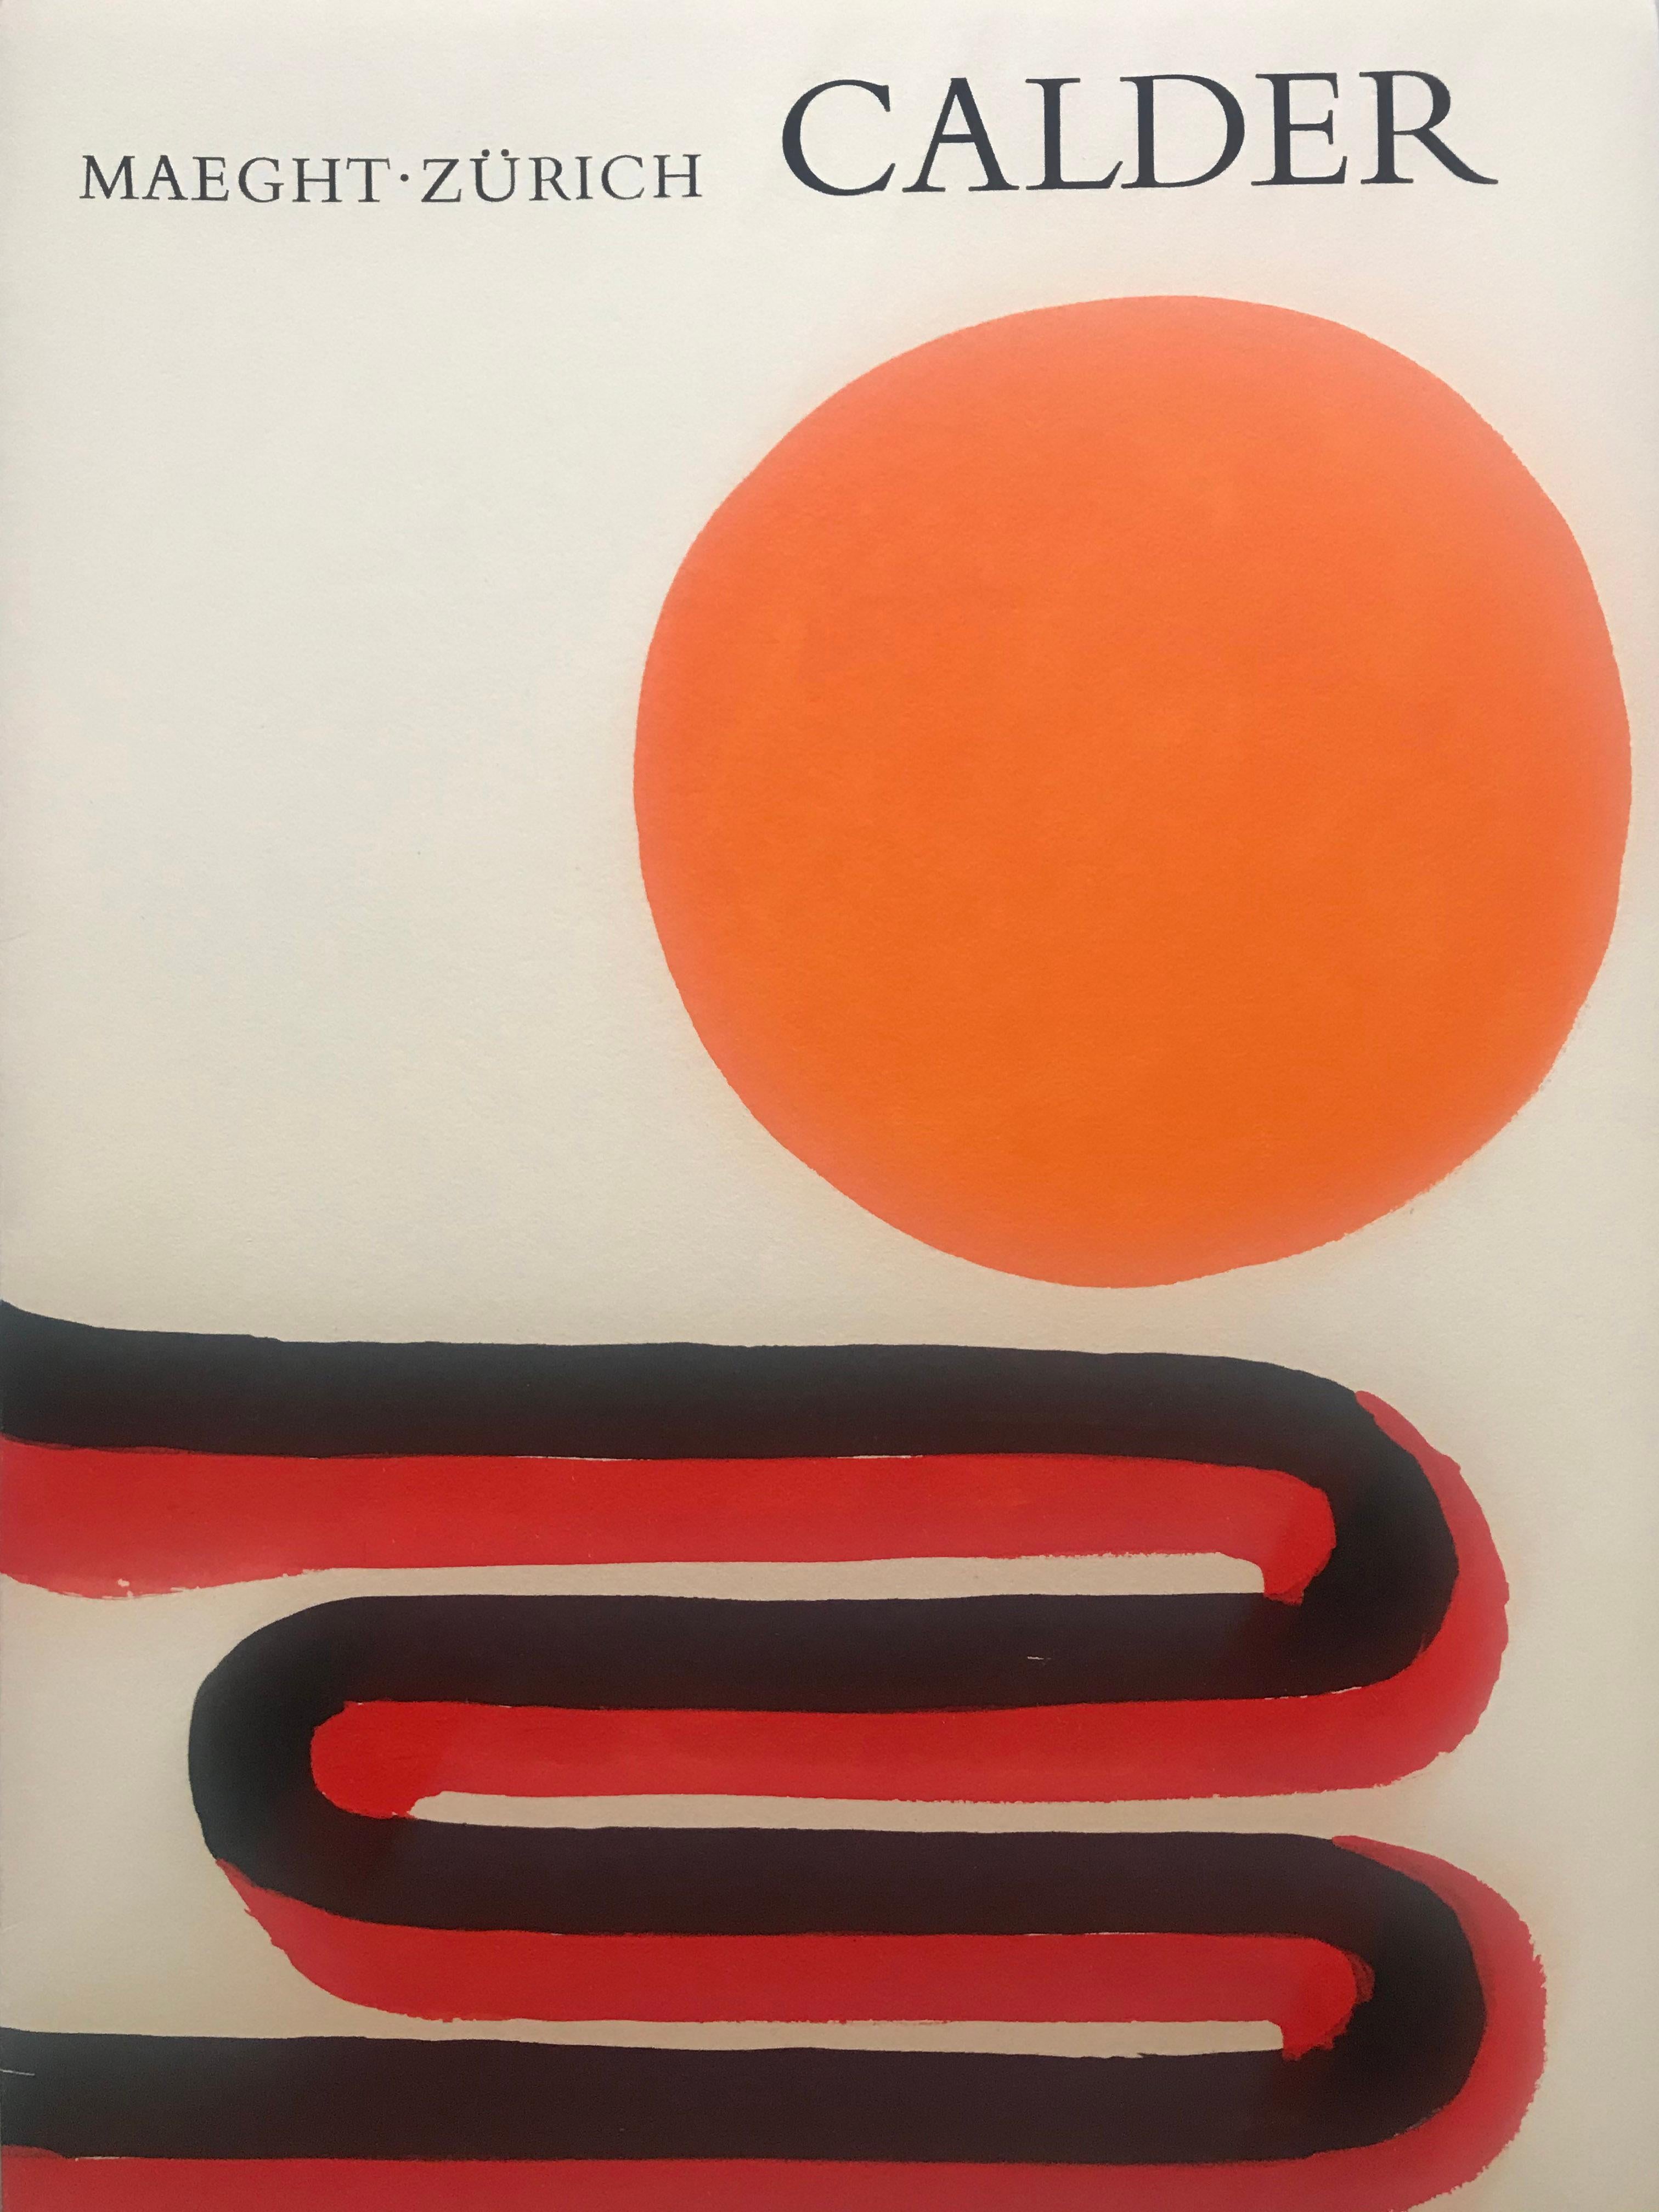 Calder retrospektive
(Maeght Zurich)
Portfolio non paginé 
26 pages
c.giedion welcker (auteur)
Maeght (éditeur)
1973
Contient 4 lithographies couleur dont la couverture double page 
23,4 cms x 31,9 cms
Parfait état 
290 euros